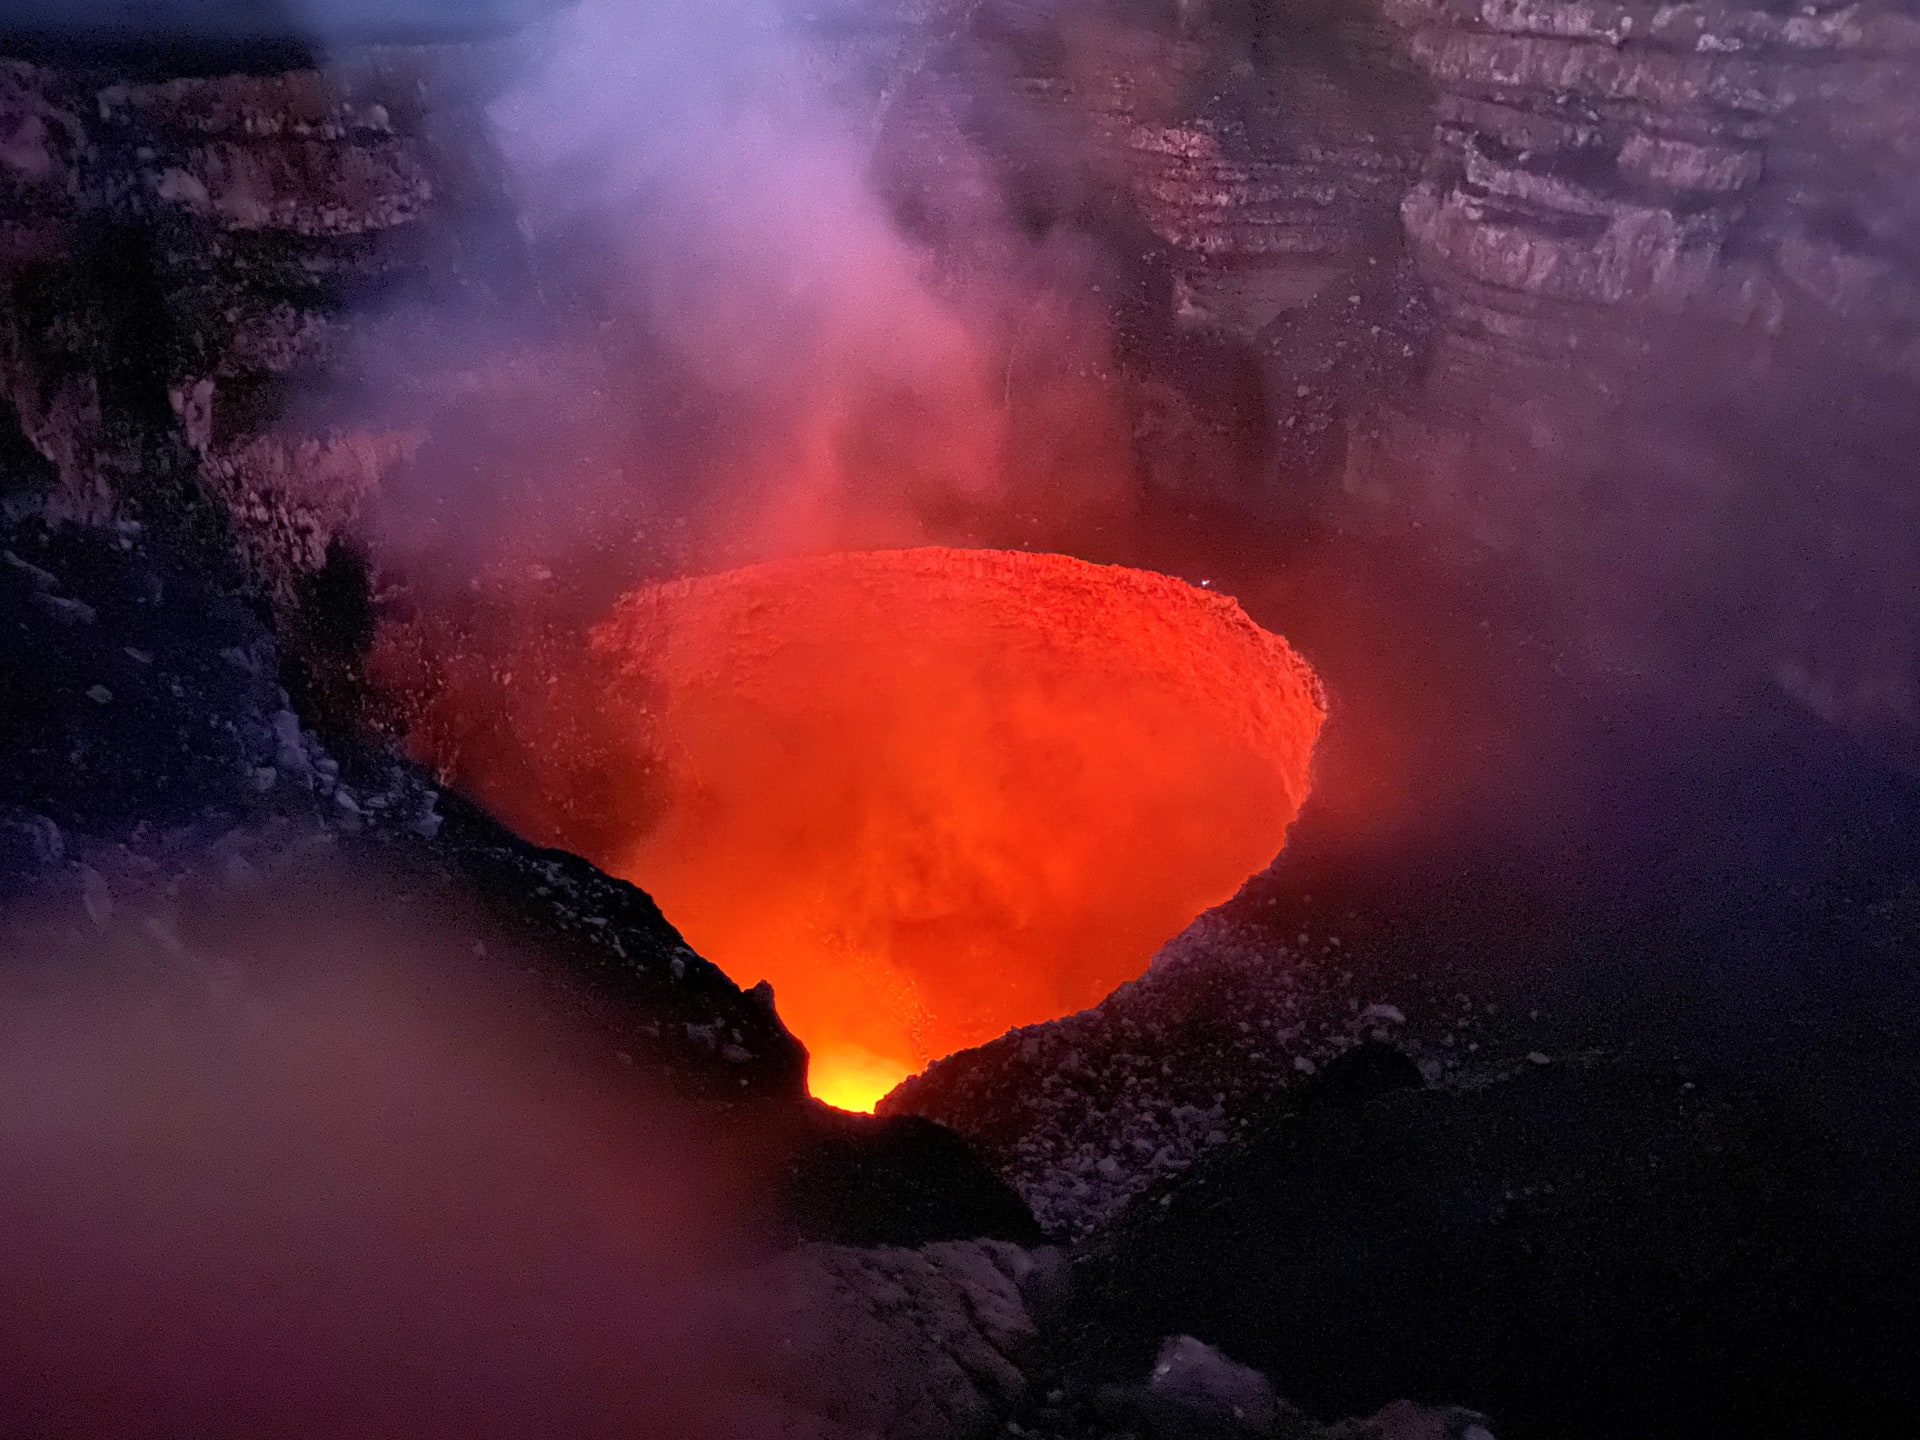 مغامر سعودي يتدلى فوق بركان "ماسايا" في نيكاراغوا